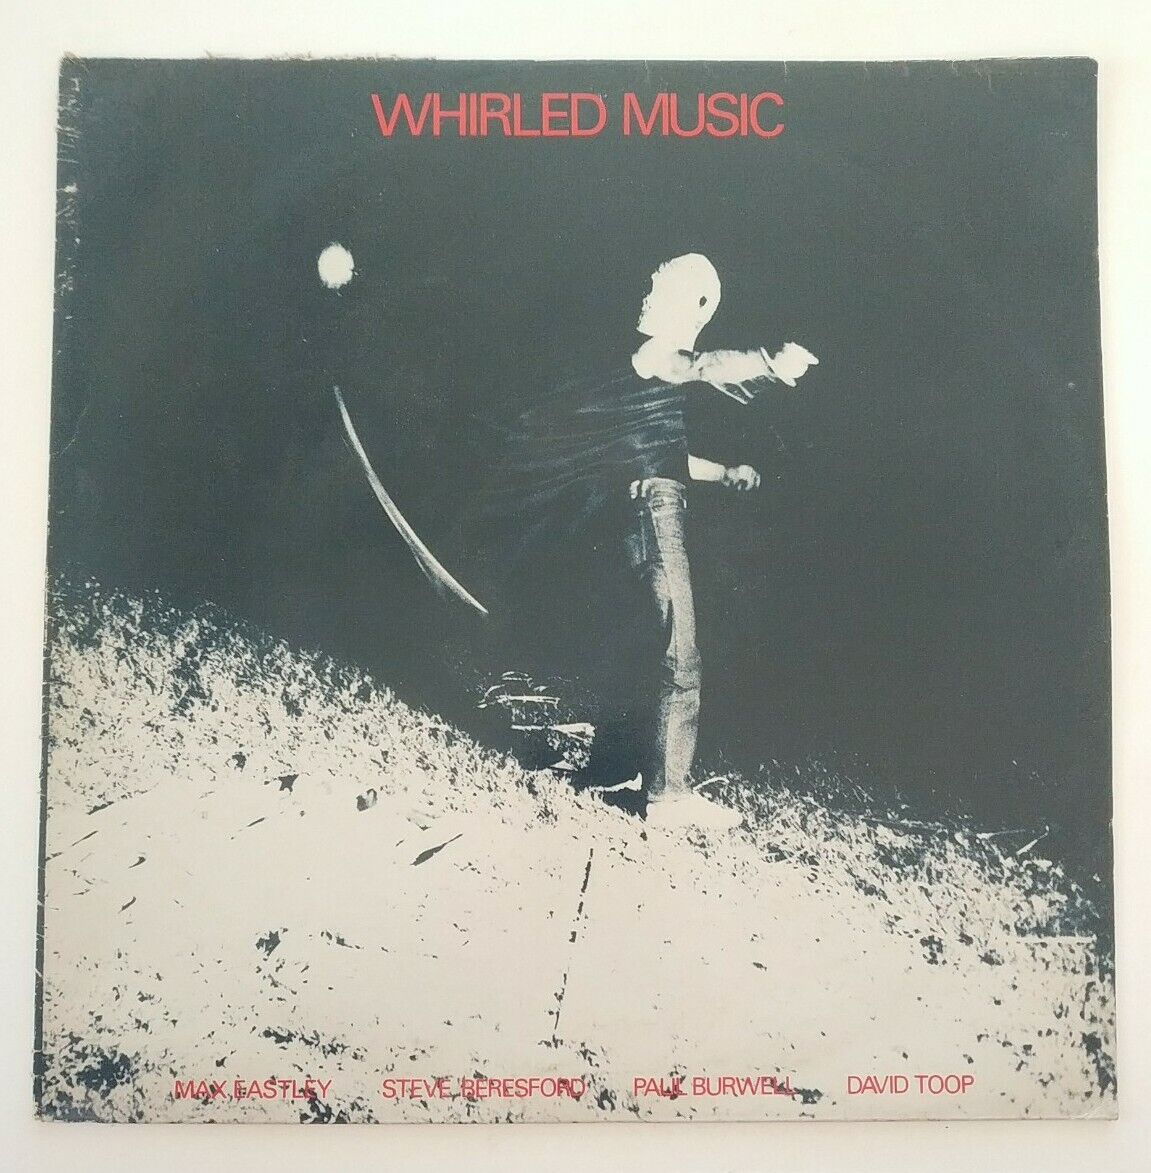 Whirled Music Max Eastley Steve Beresford Paul Burwell David Toop VG+ LP #792